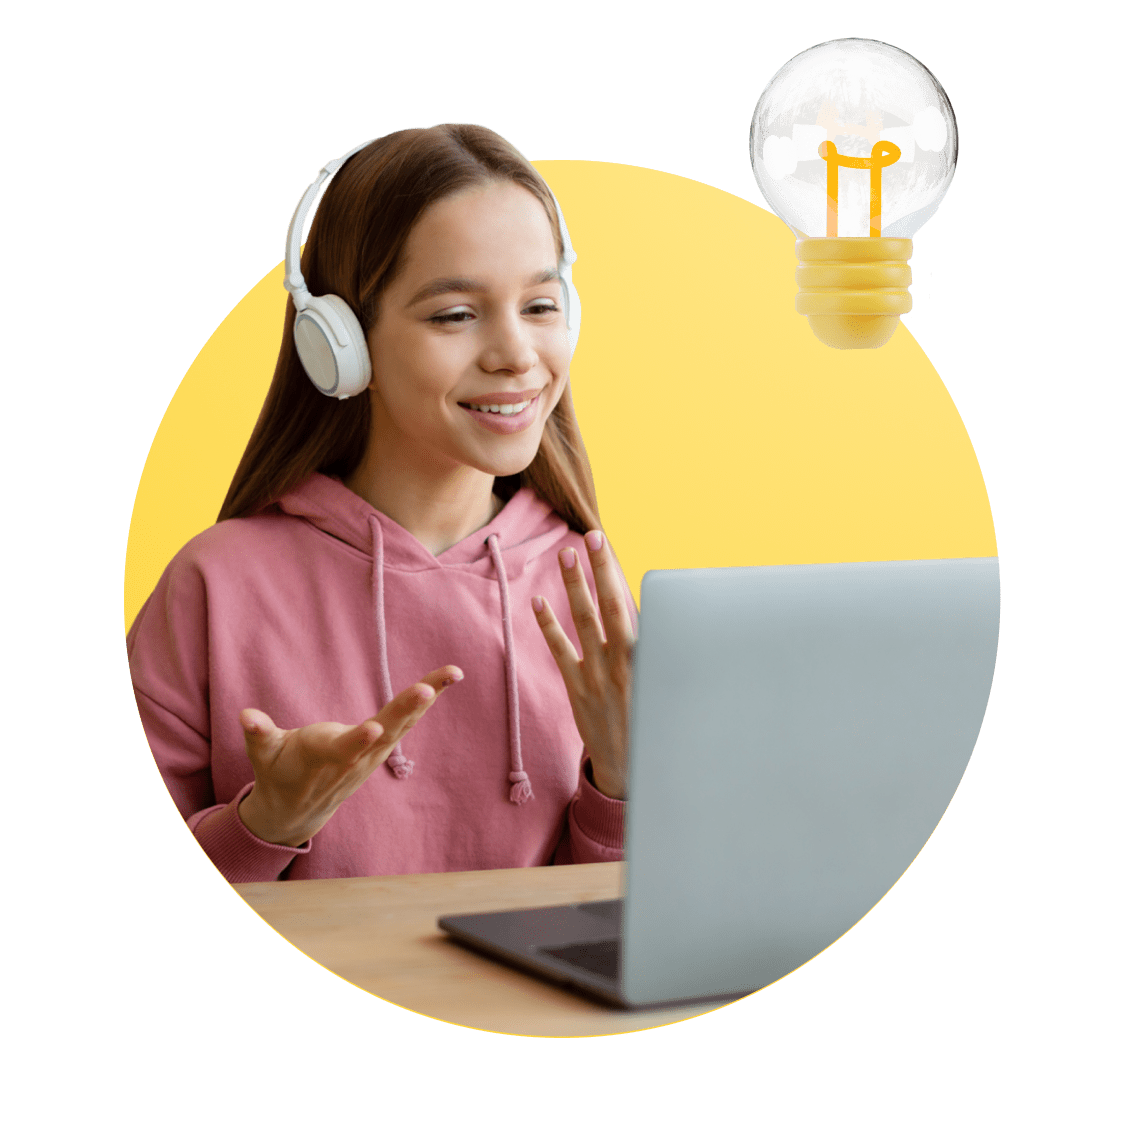 Virginia Online Schools image 7 (name 4 Young Girl Desk Headphones Light)